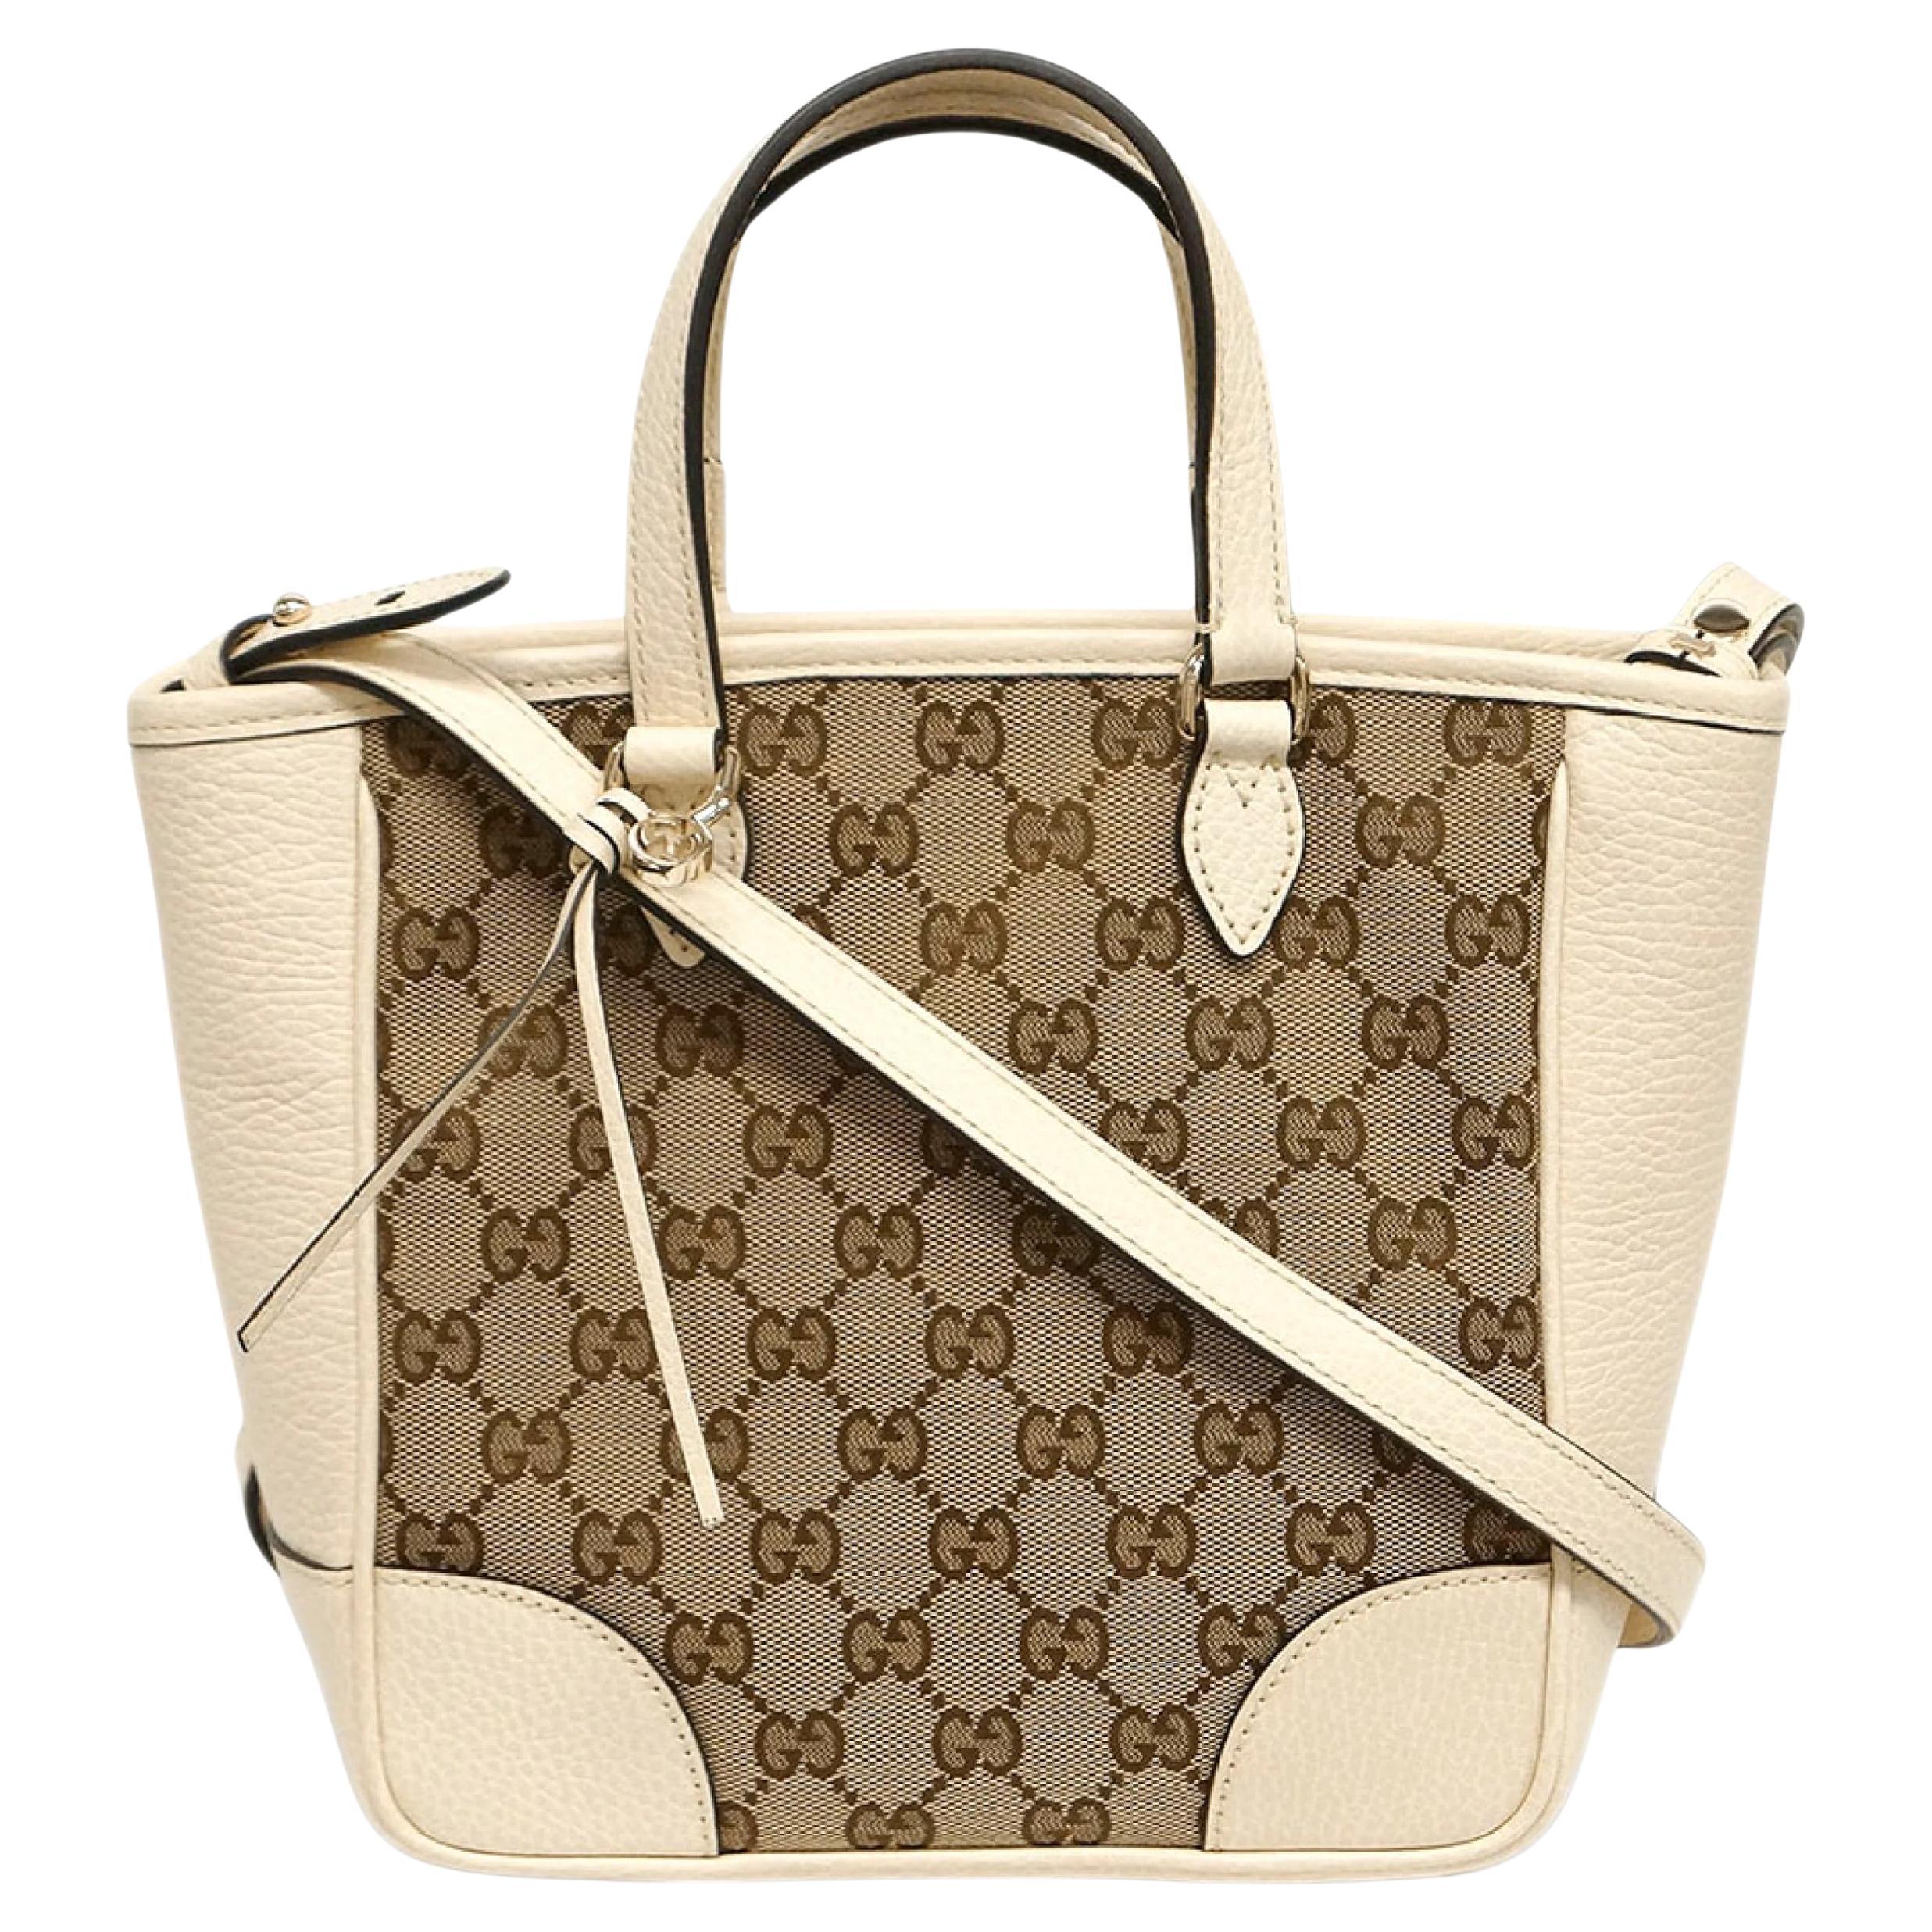 NEW Gucci Beige White Small Bree GG Supreme Guccissima Crossbody Tote Bag